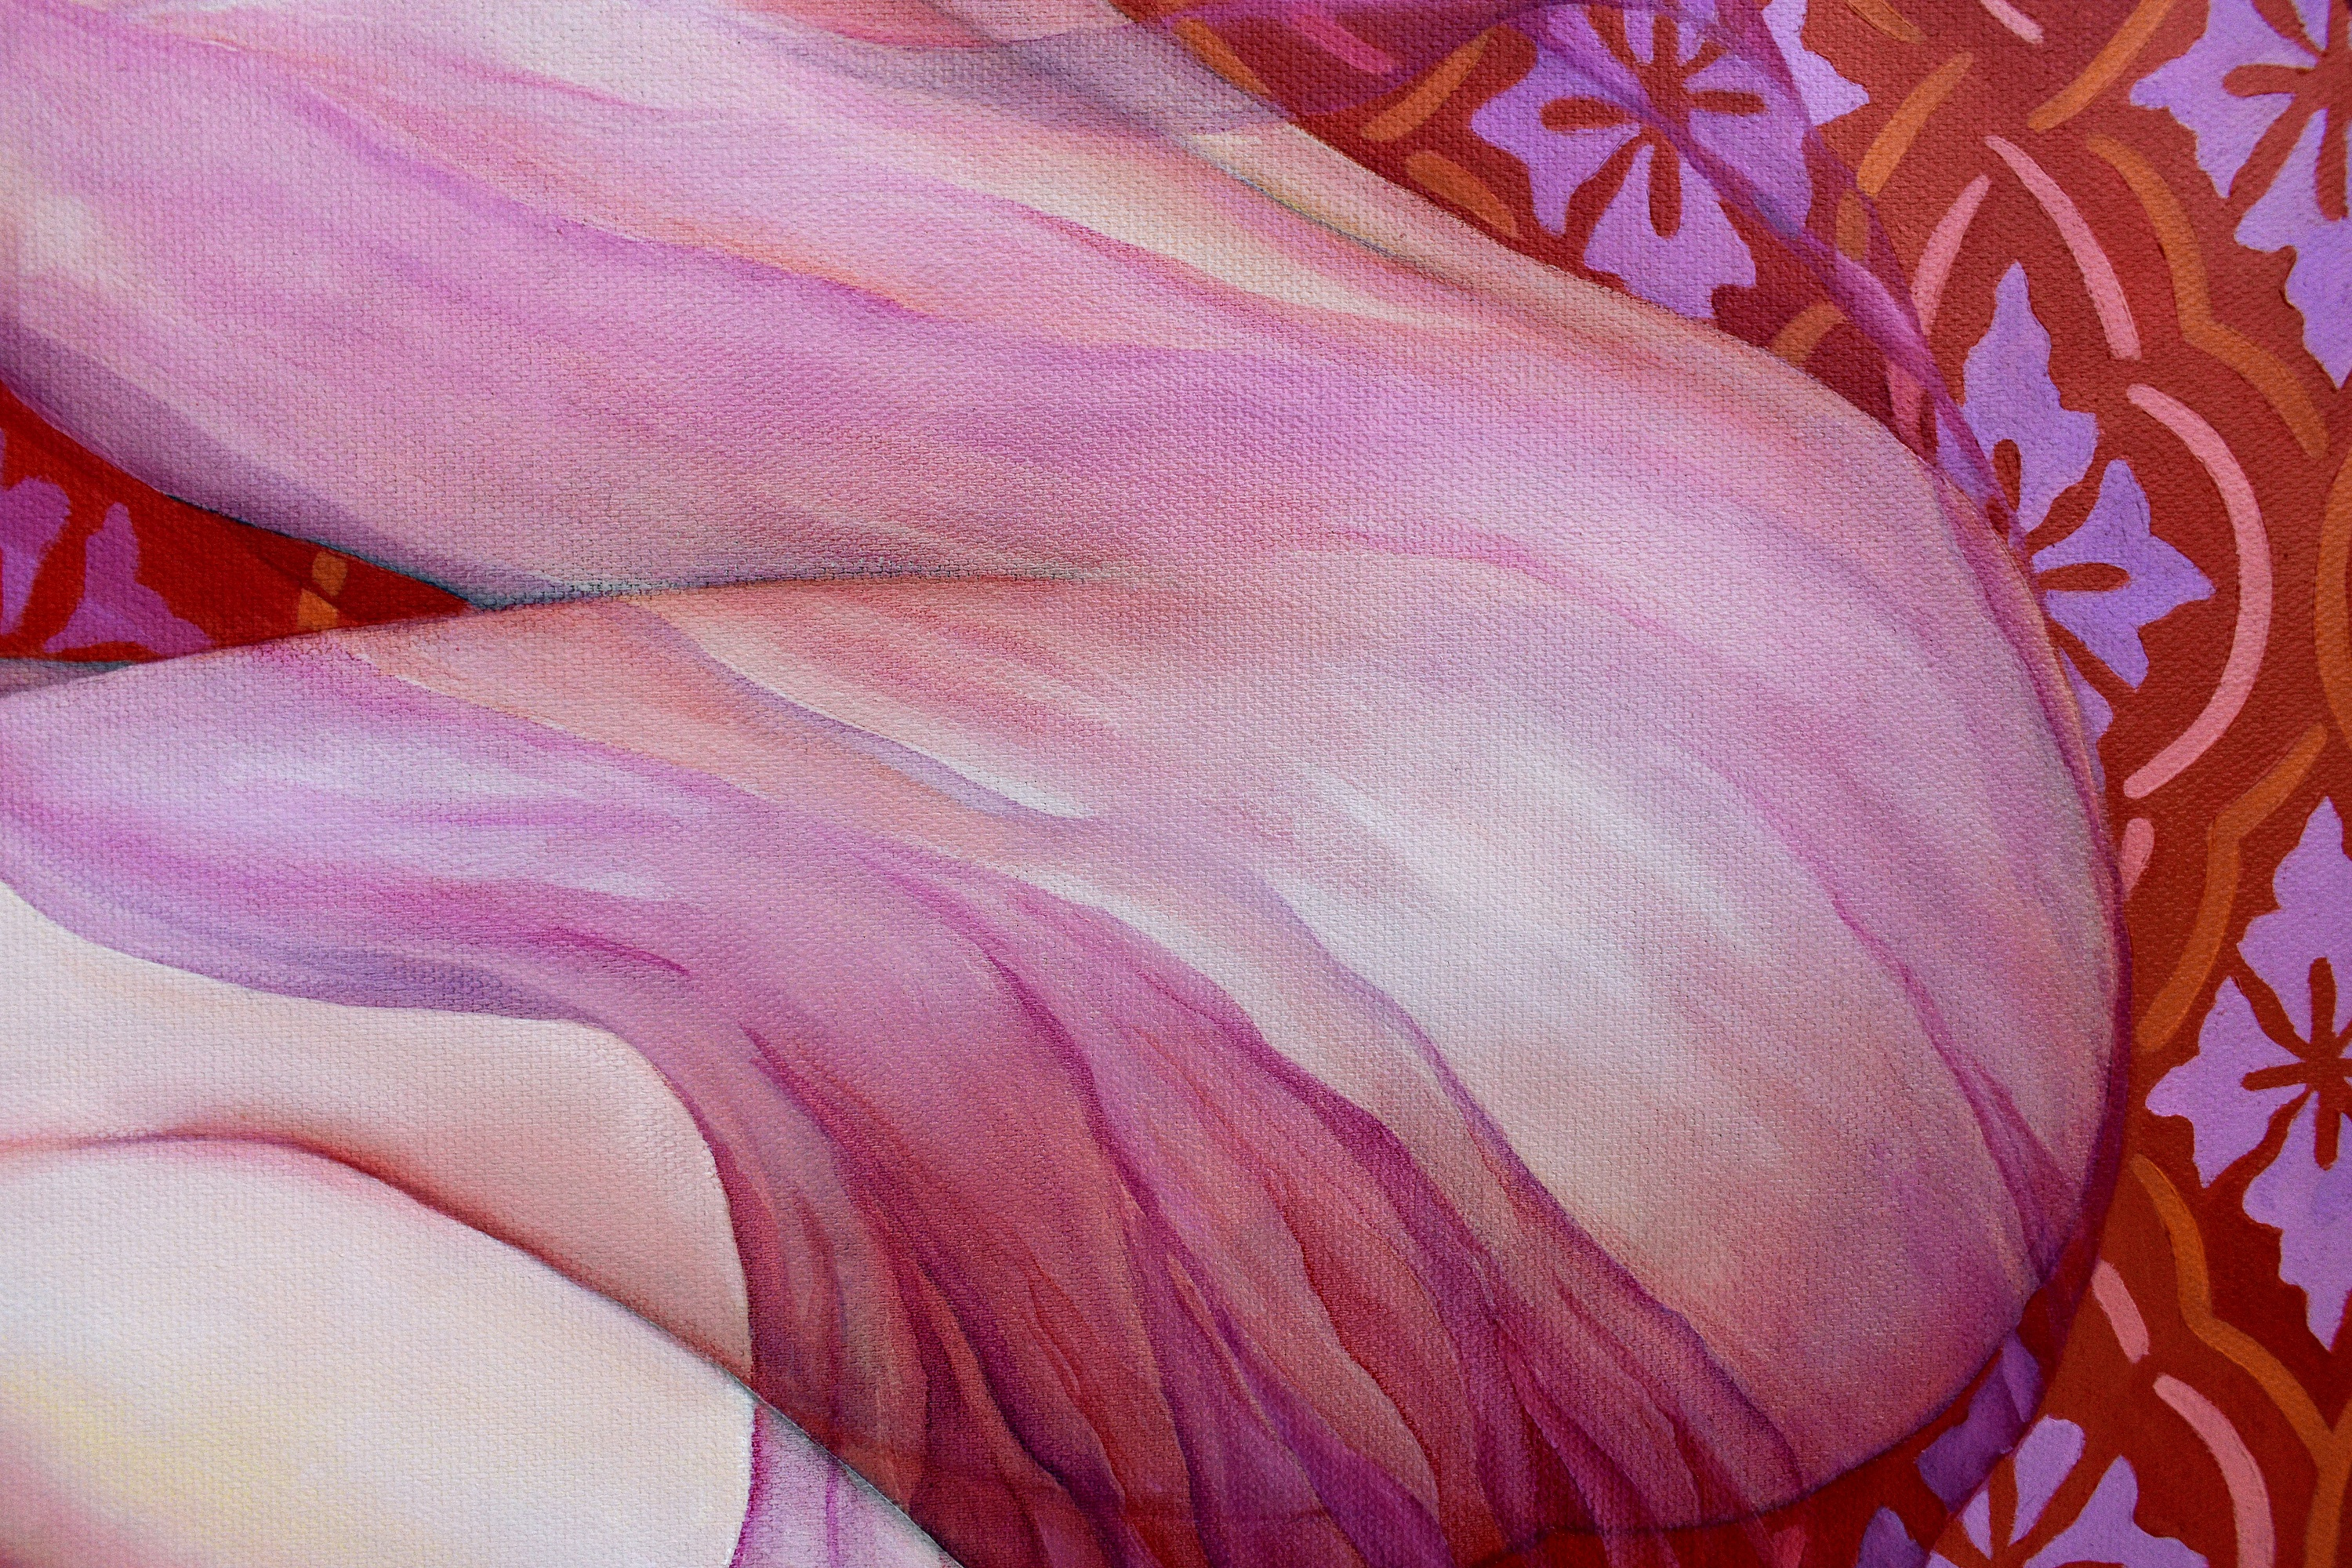 Painting by Marina Venediktova Awakenings detail